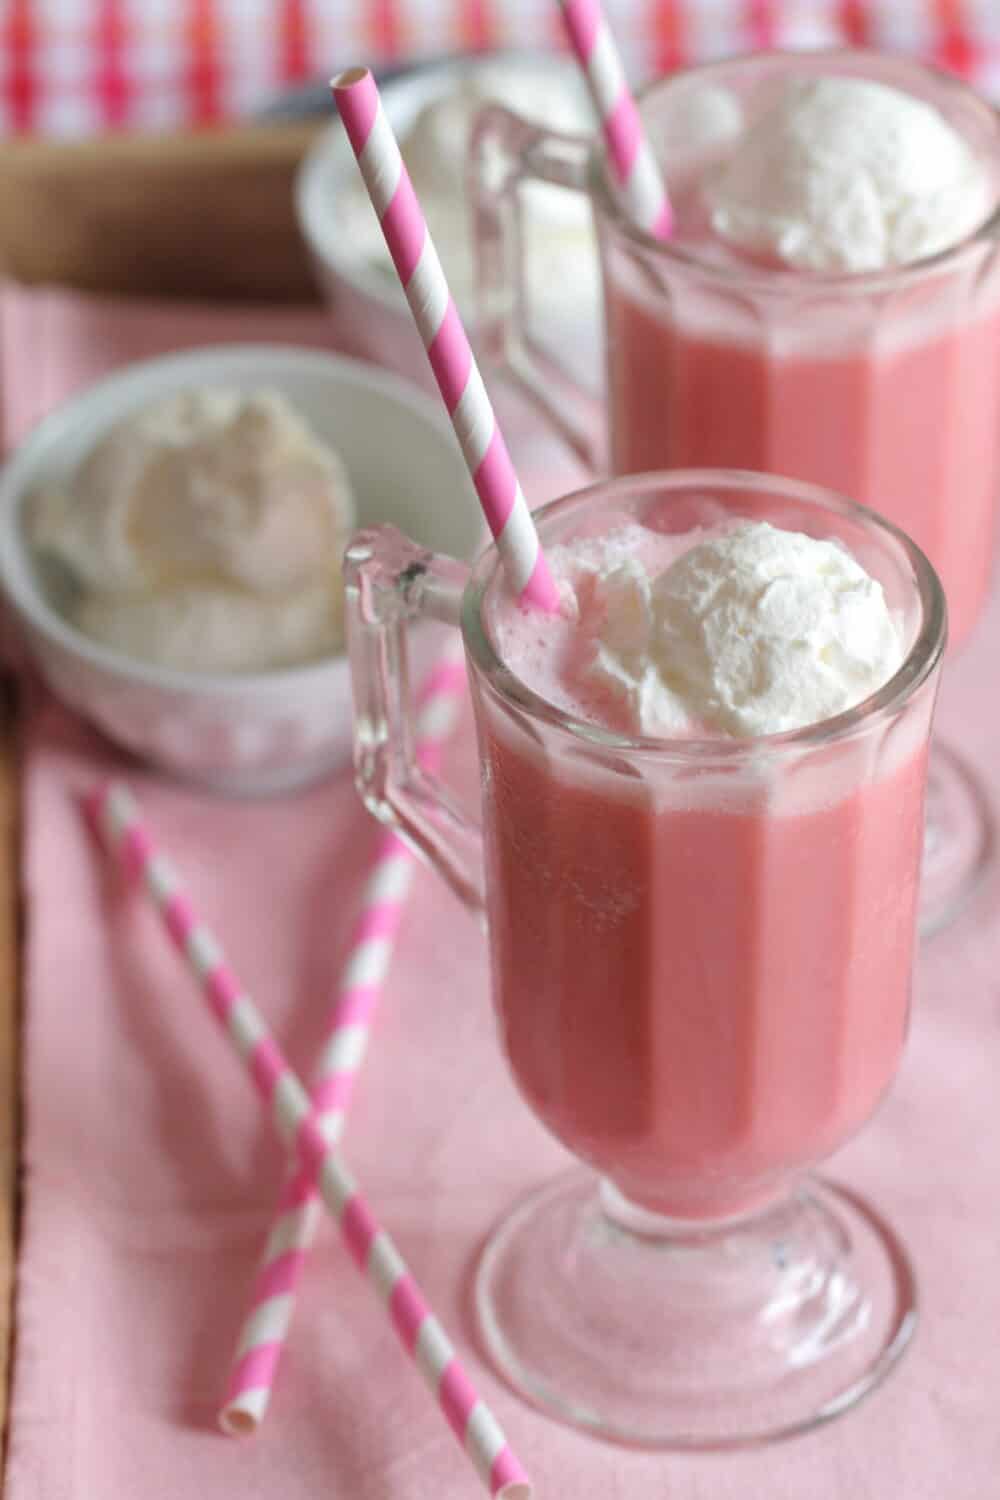 frozen strawberry milk in glass with straw